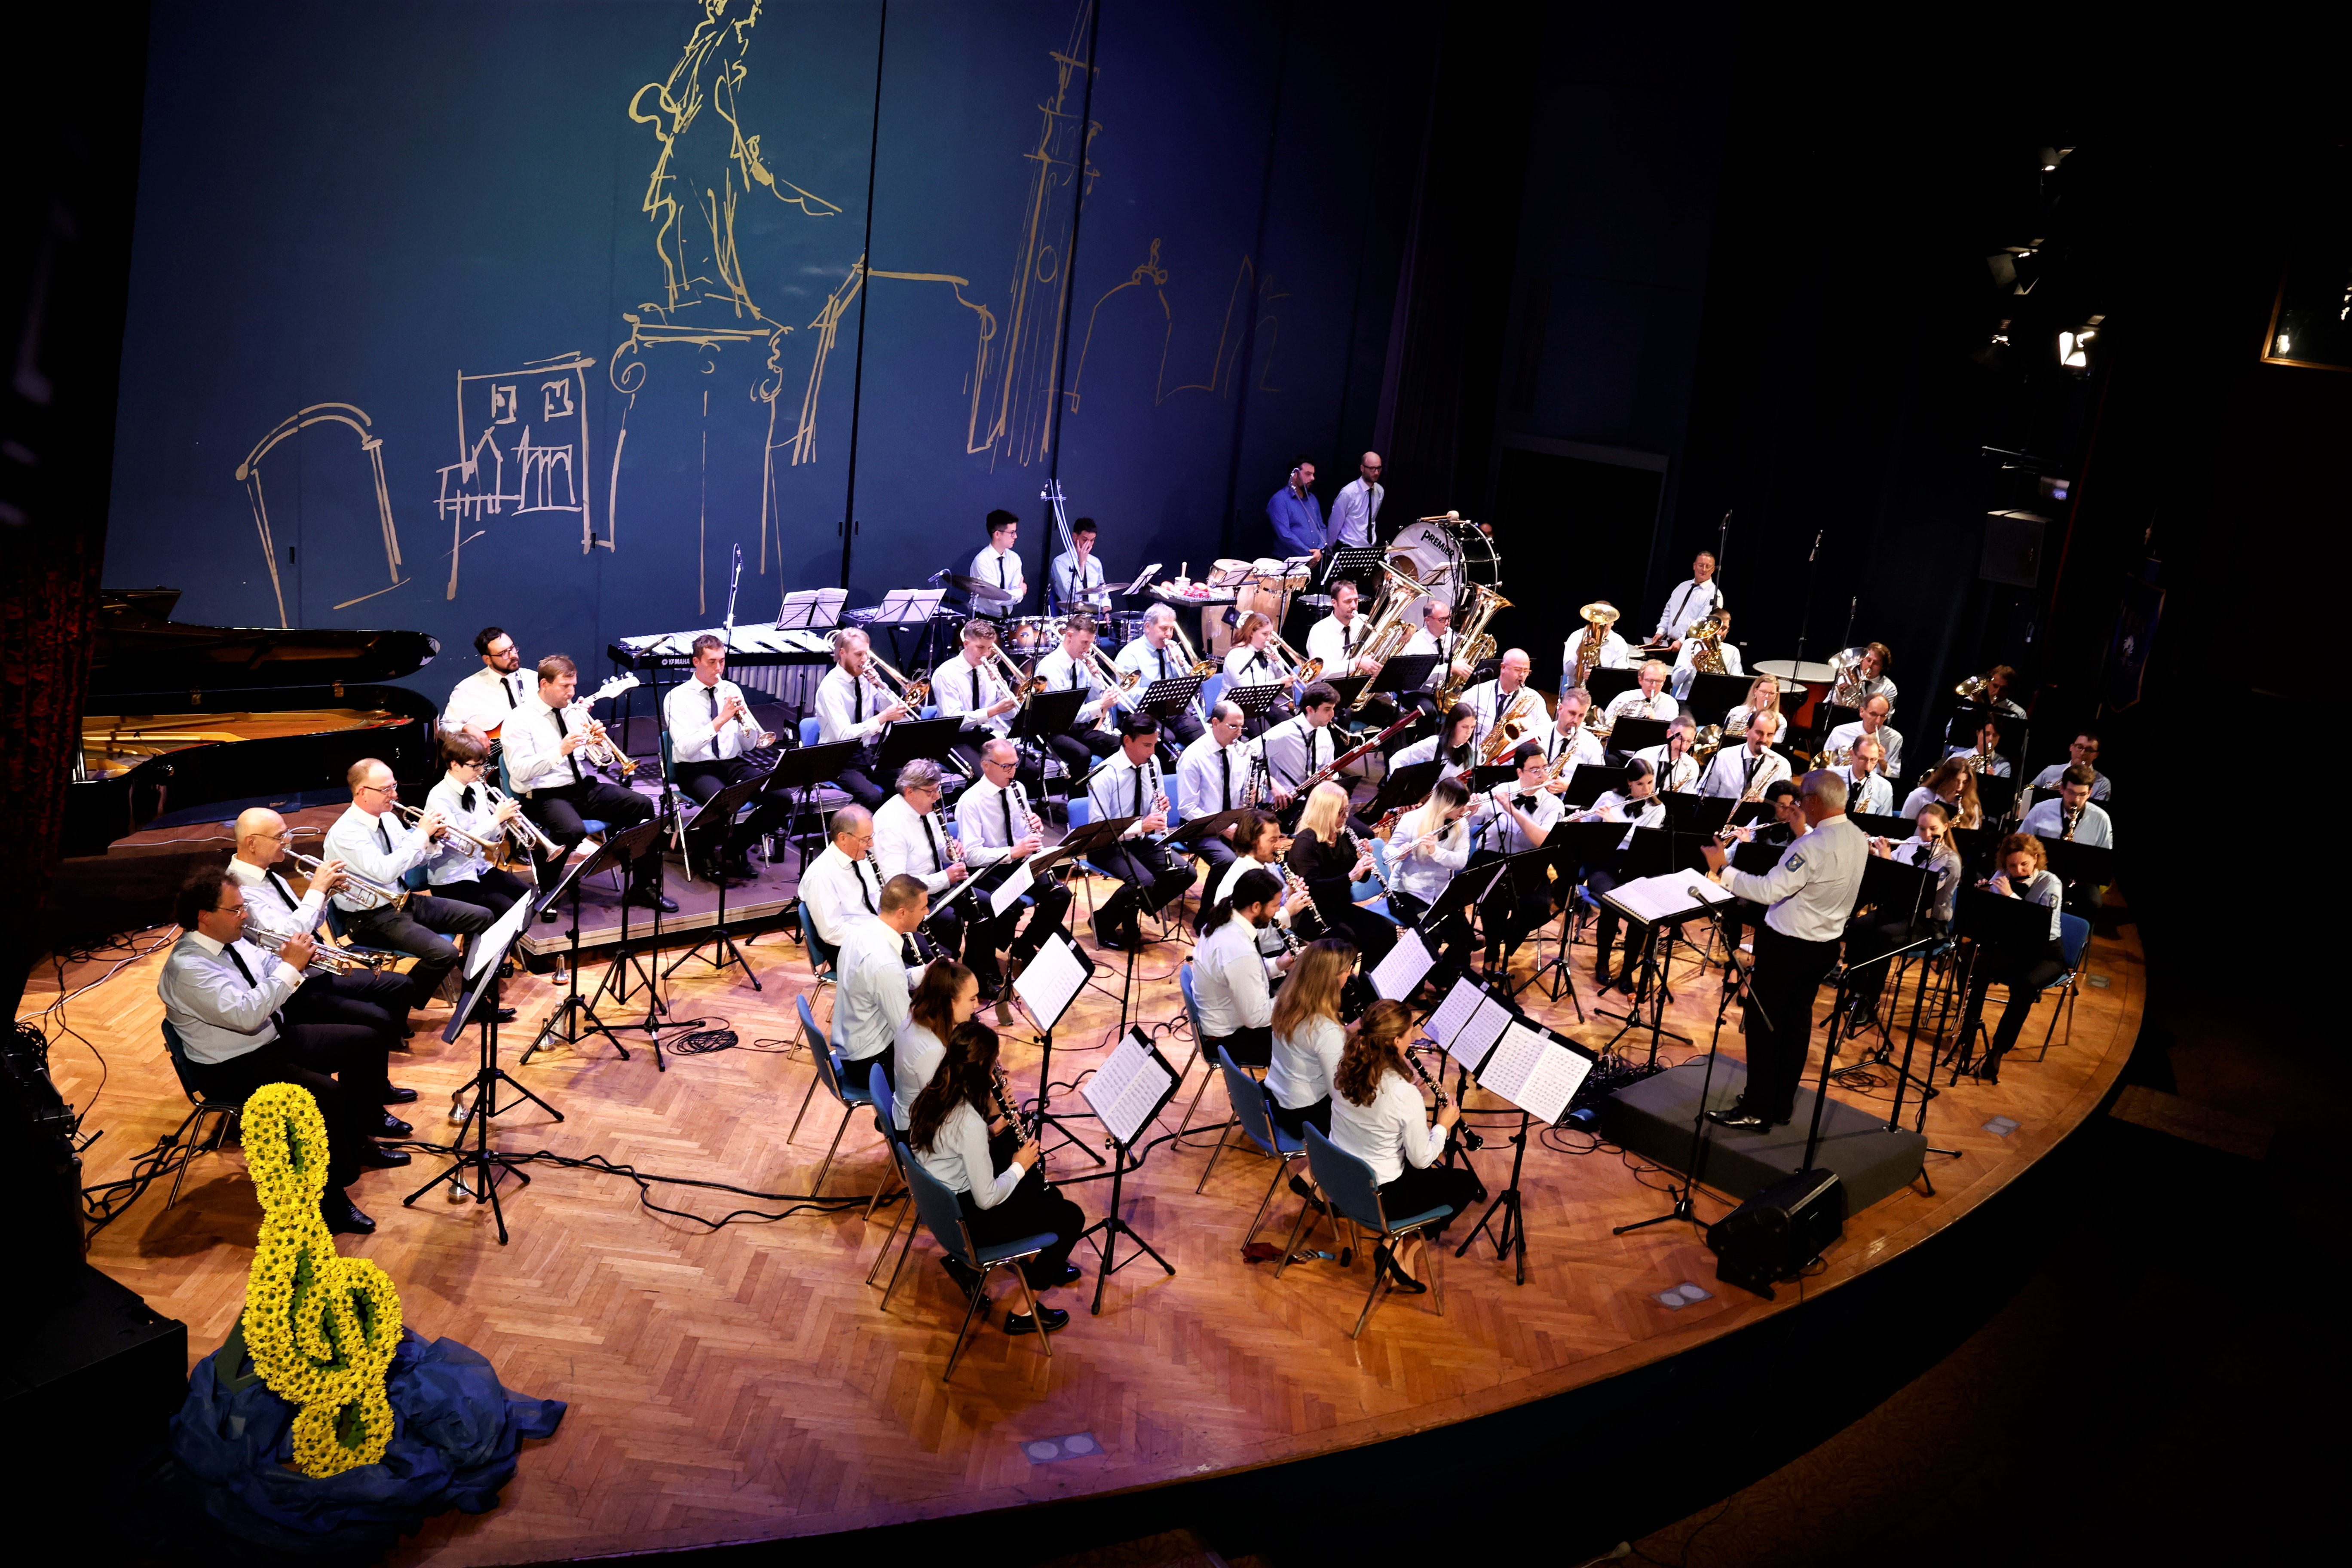 FOTO: Pihalni Orkester Piran 170 let @ Avditorij Portorož, 22.10.2022